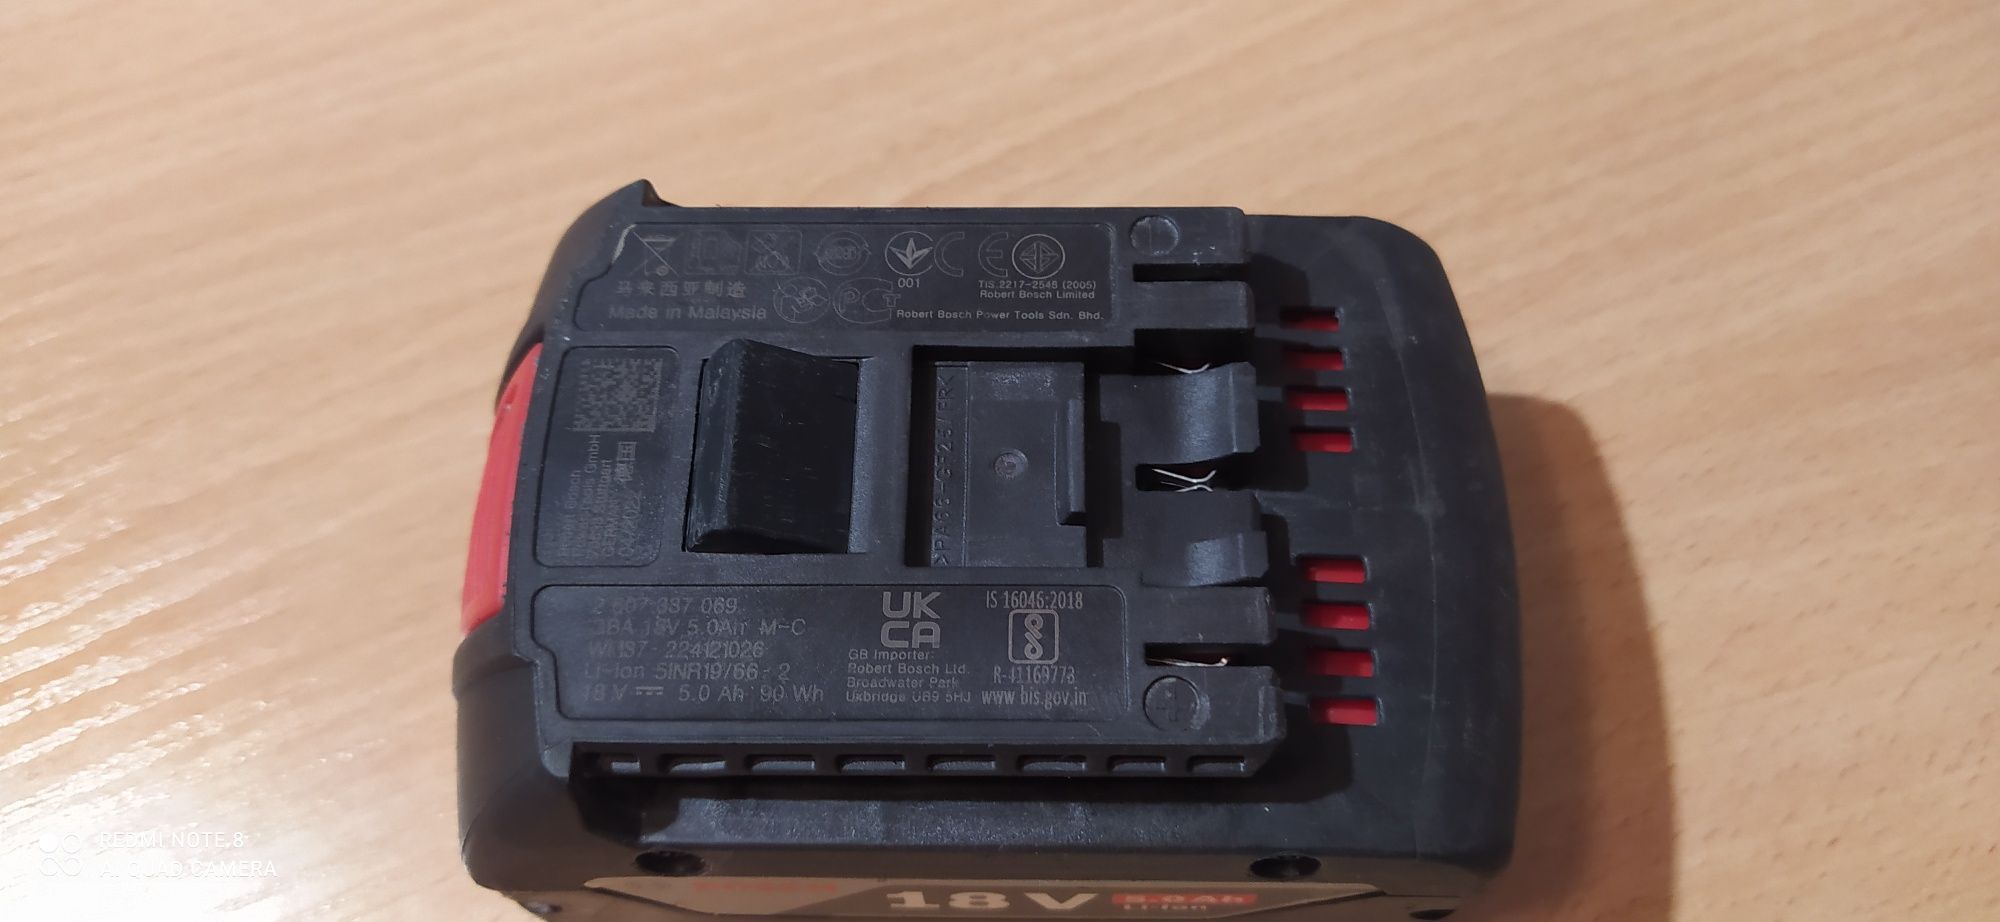 Bosch bateria 5ah używana bardzo mało kupiona w Niemczech